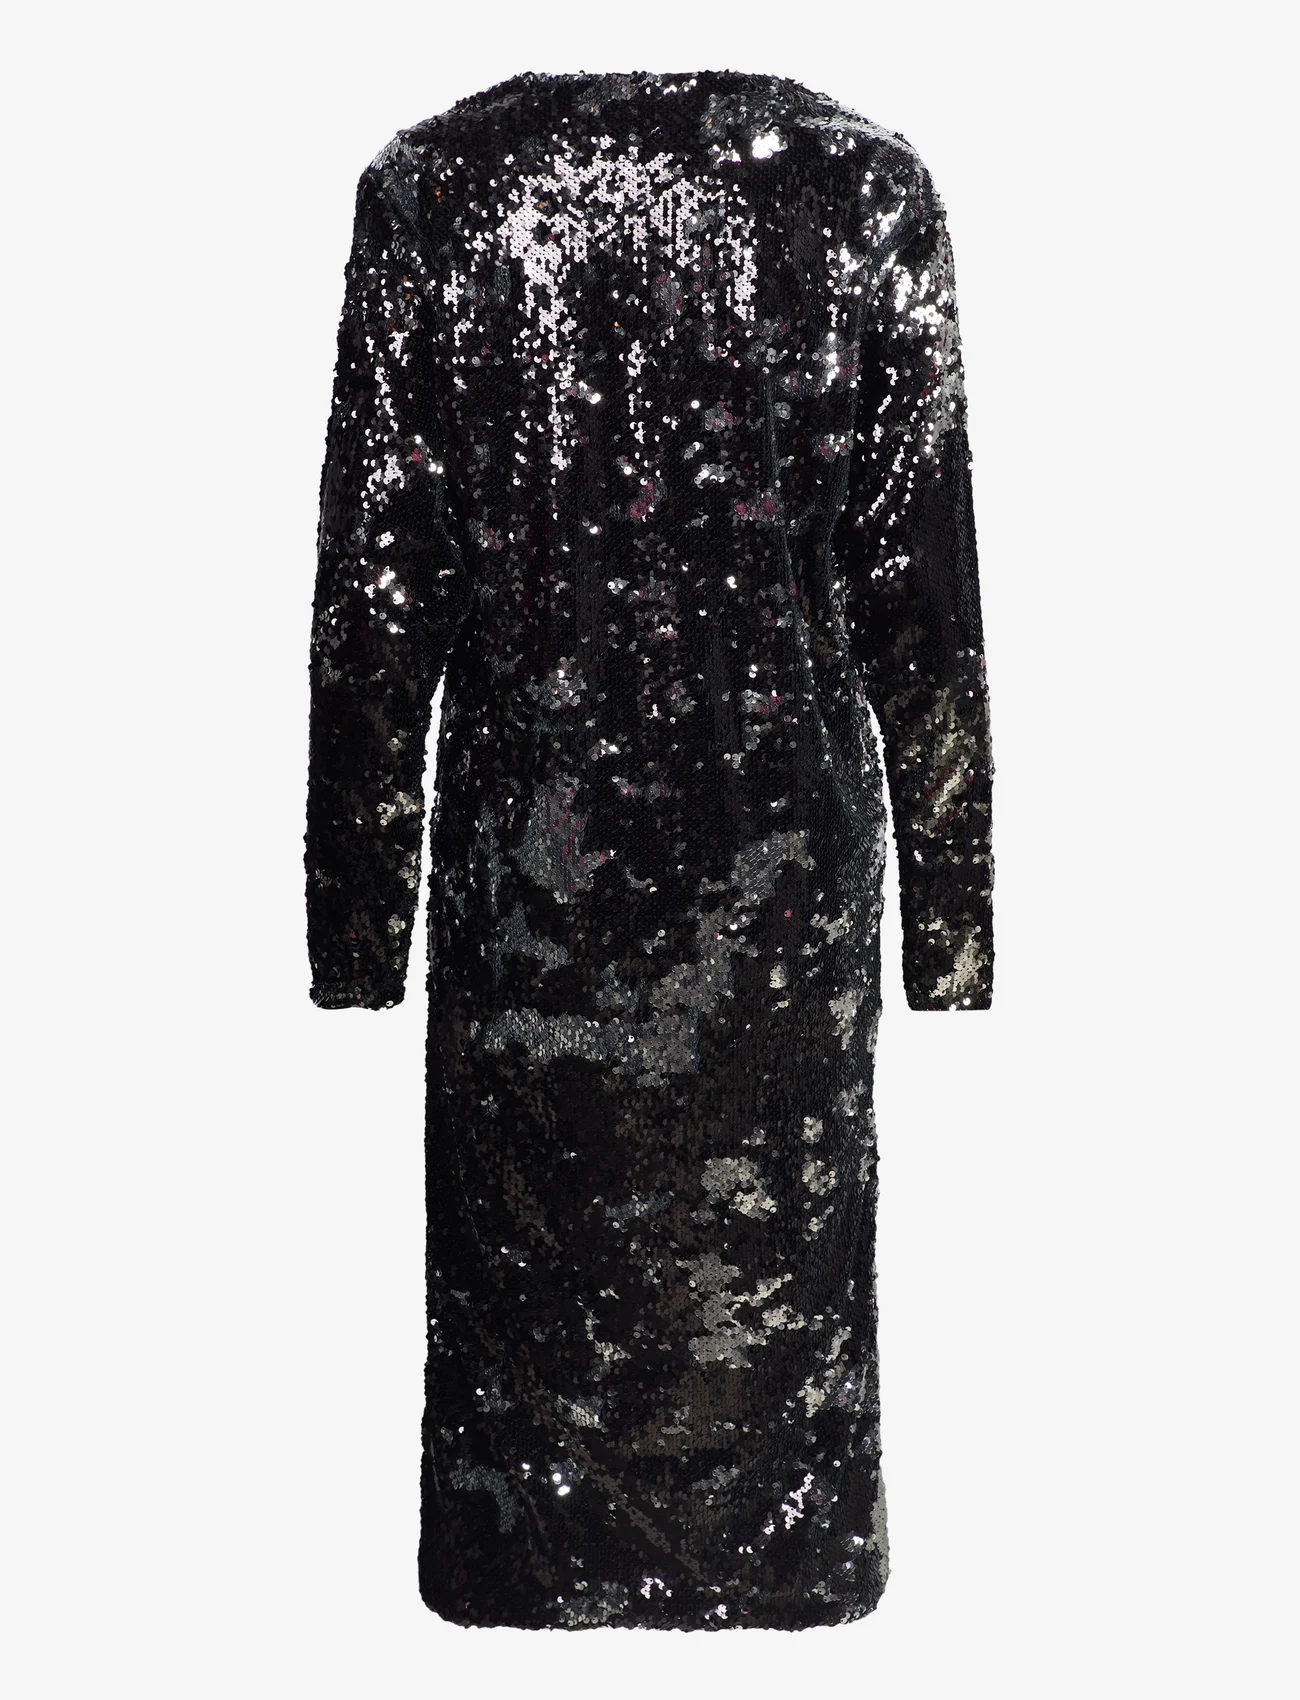 Mads Nørgaard - Neo Sequins Phalia Dress - odzież imprezowa w cenach outletowych - black/silver - 1